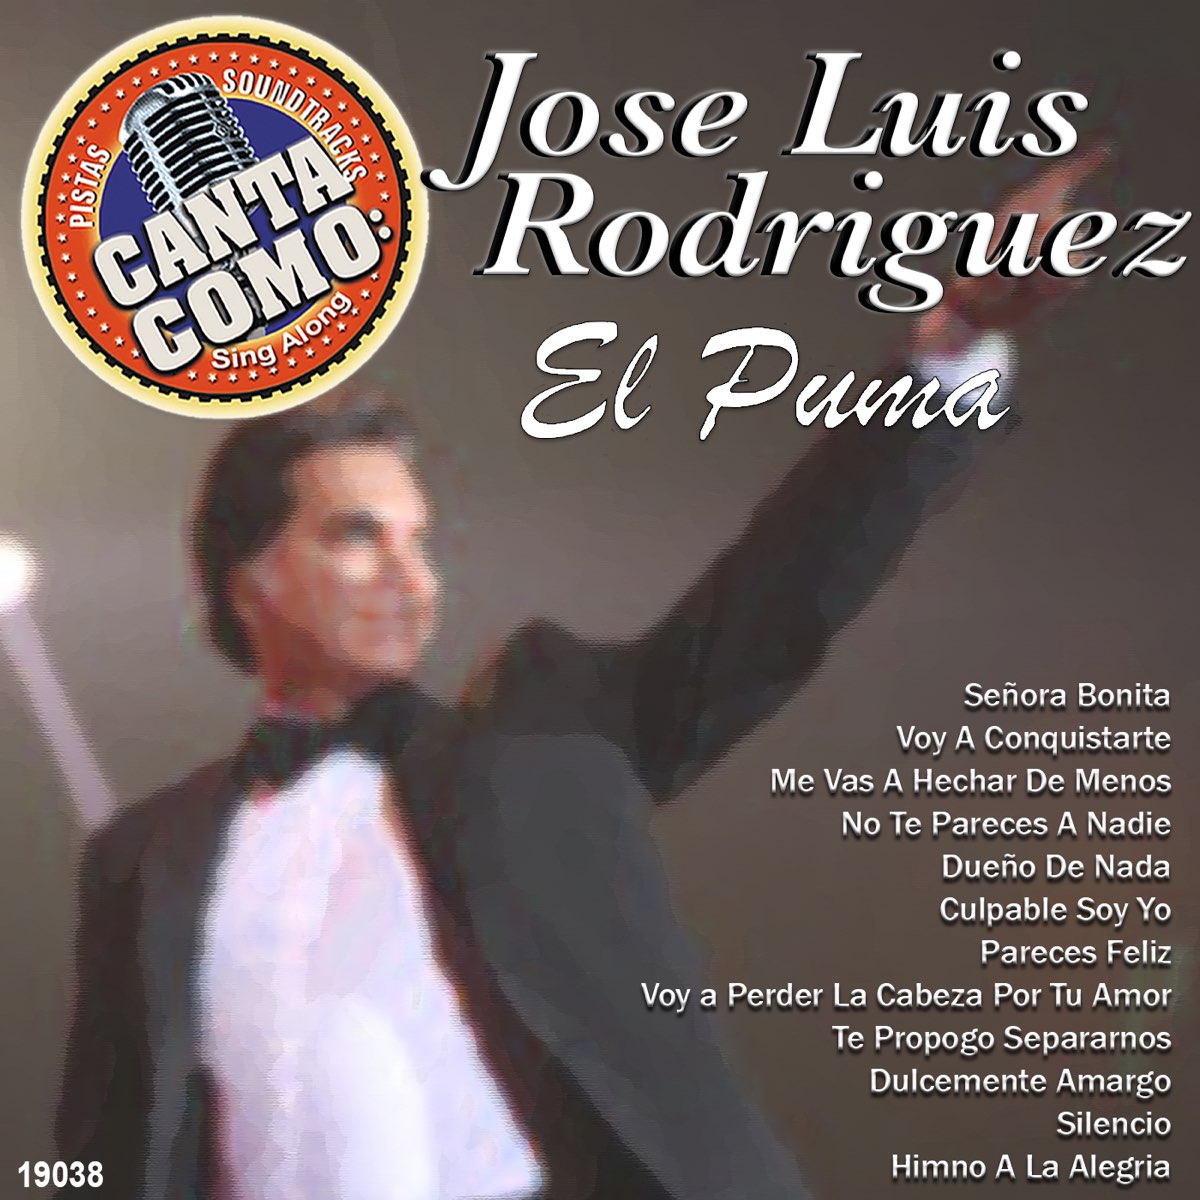 Canta Como - Sing Along: José Luis Rodriguez "El Puma" by Orquesta Melodia  on Apple Music